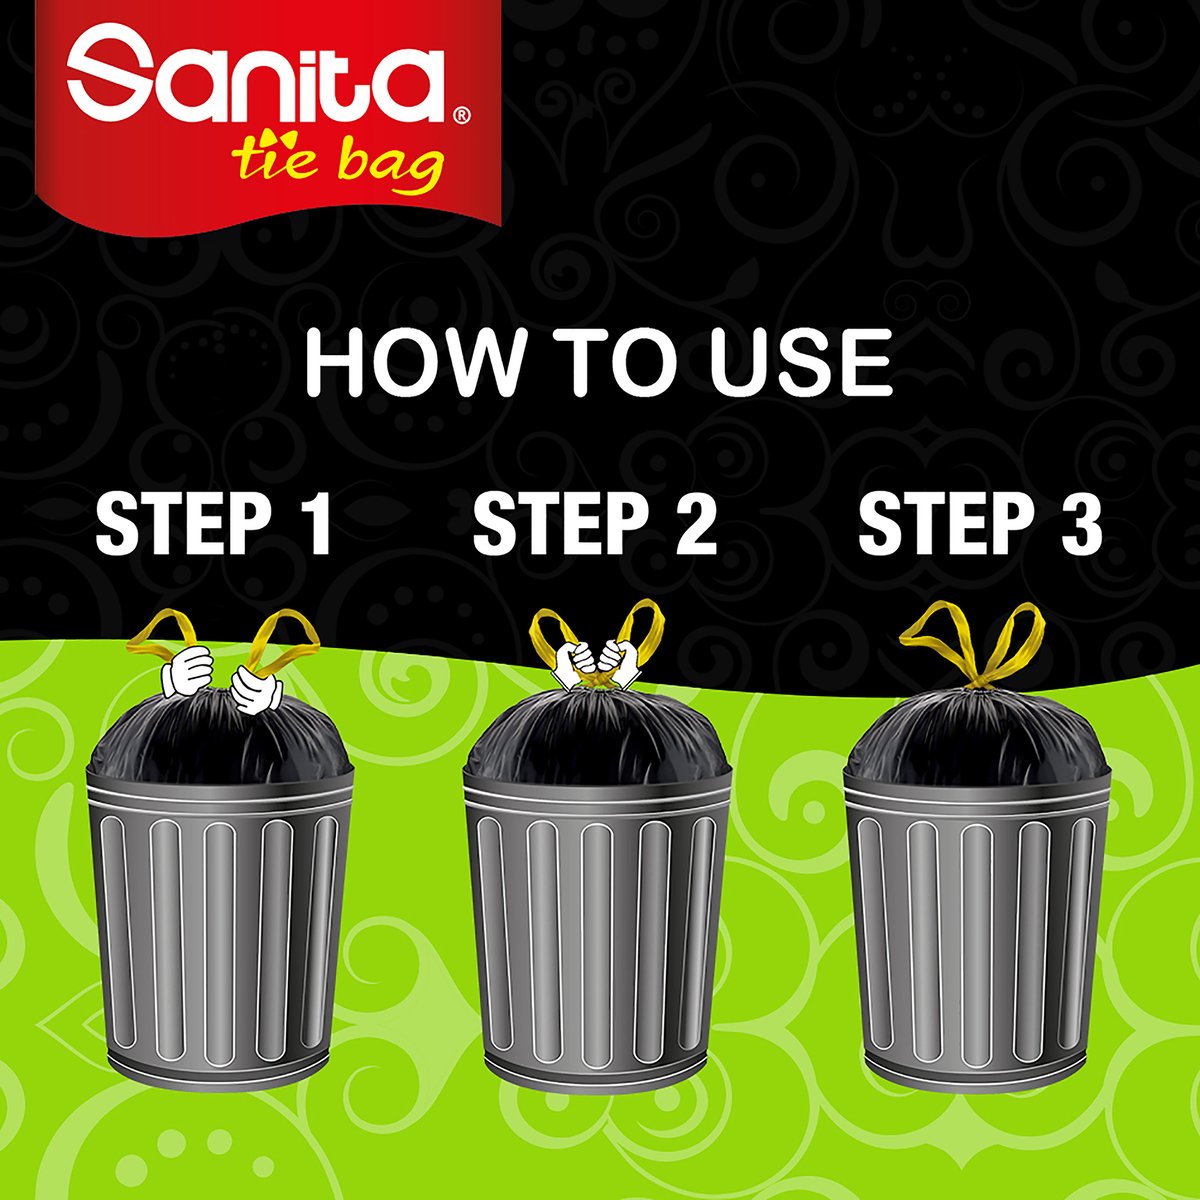 Sanita Trash Bags Biodegradable 5 Gallons Size 50 x 46cm 30pcs